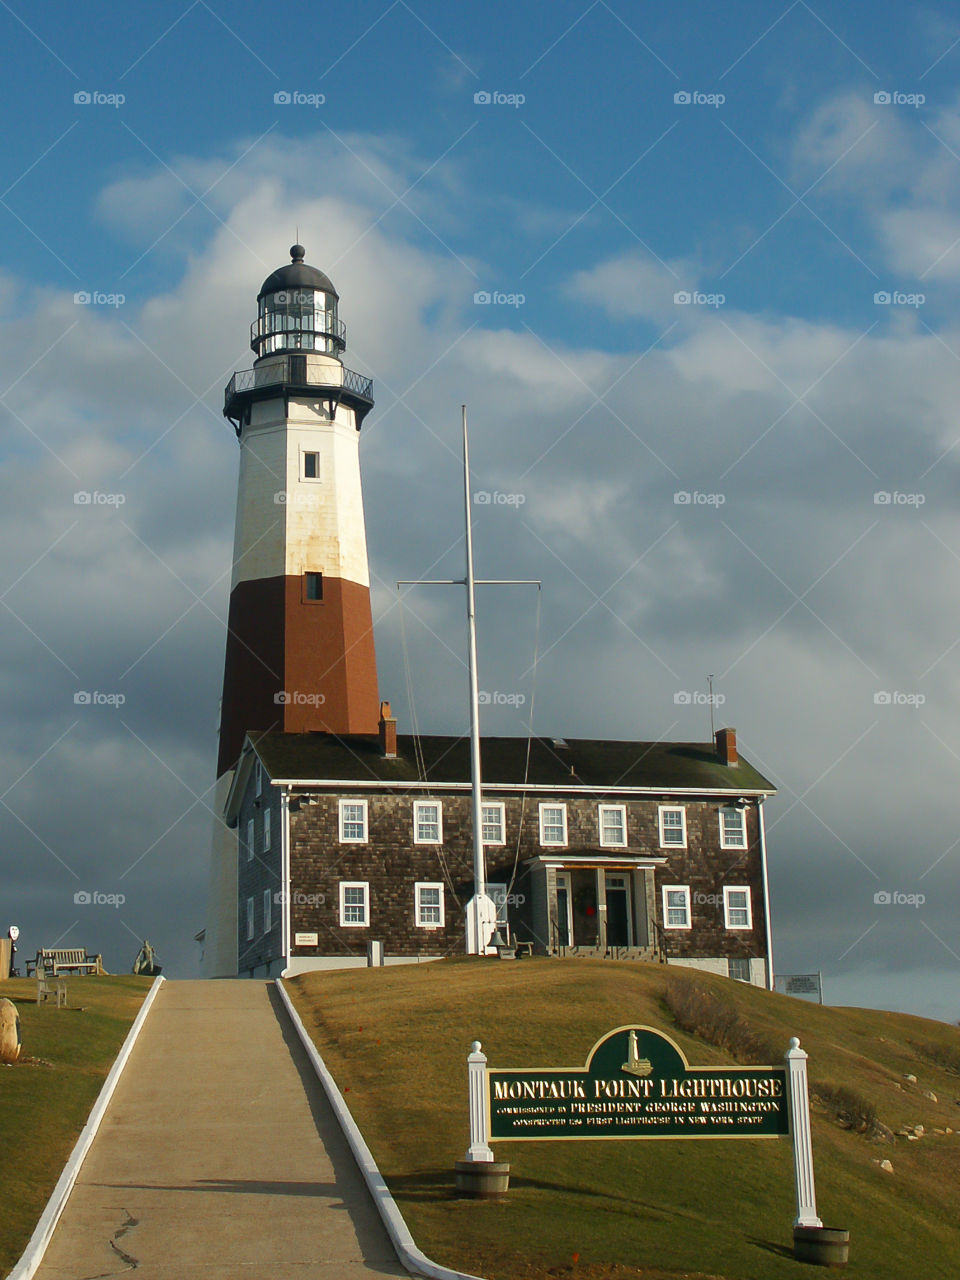 Montauk Point Lighthouse on Long Island, NY